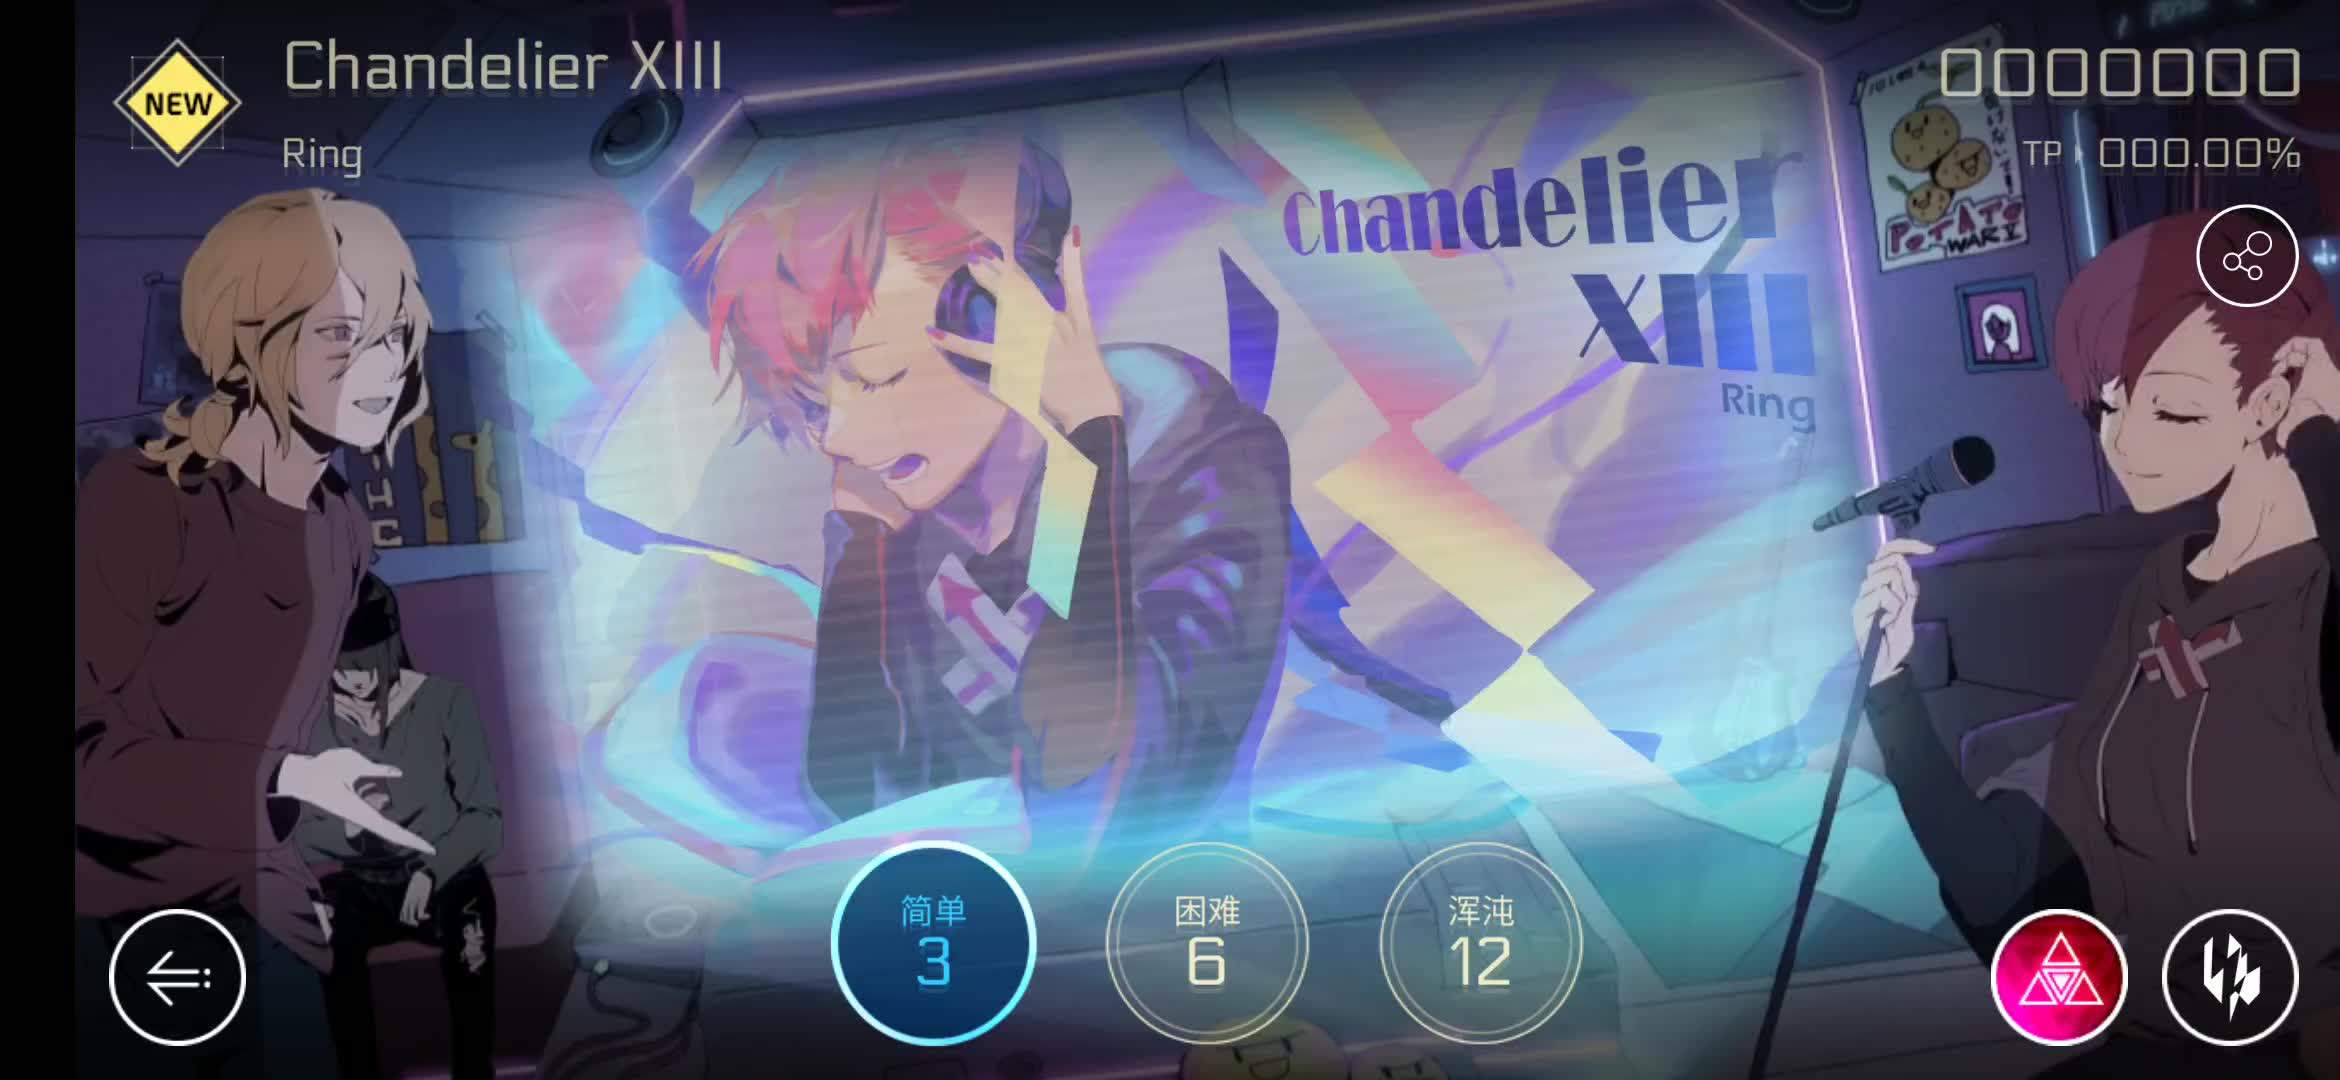  Cytus Crystal PuNK:Chandelier XIII